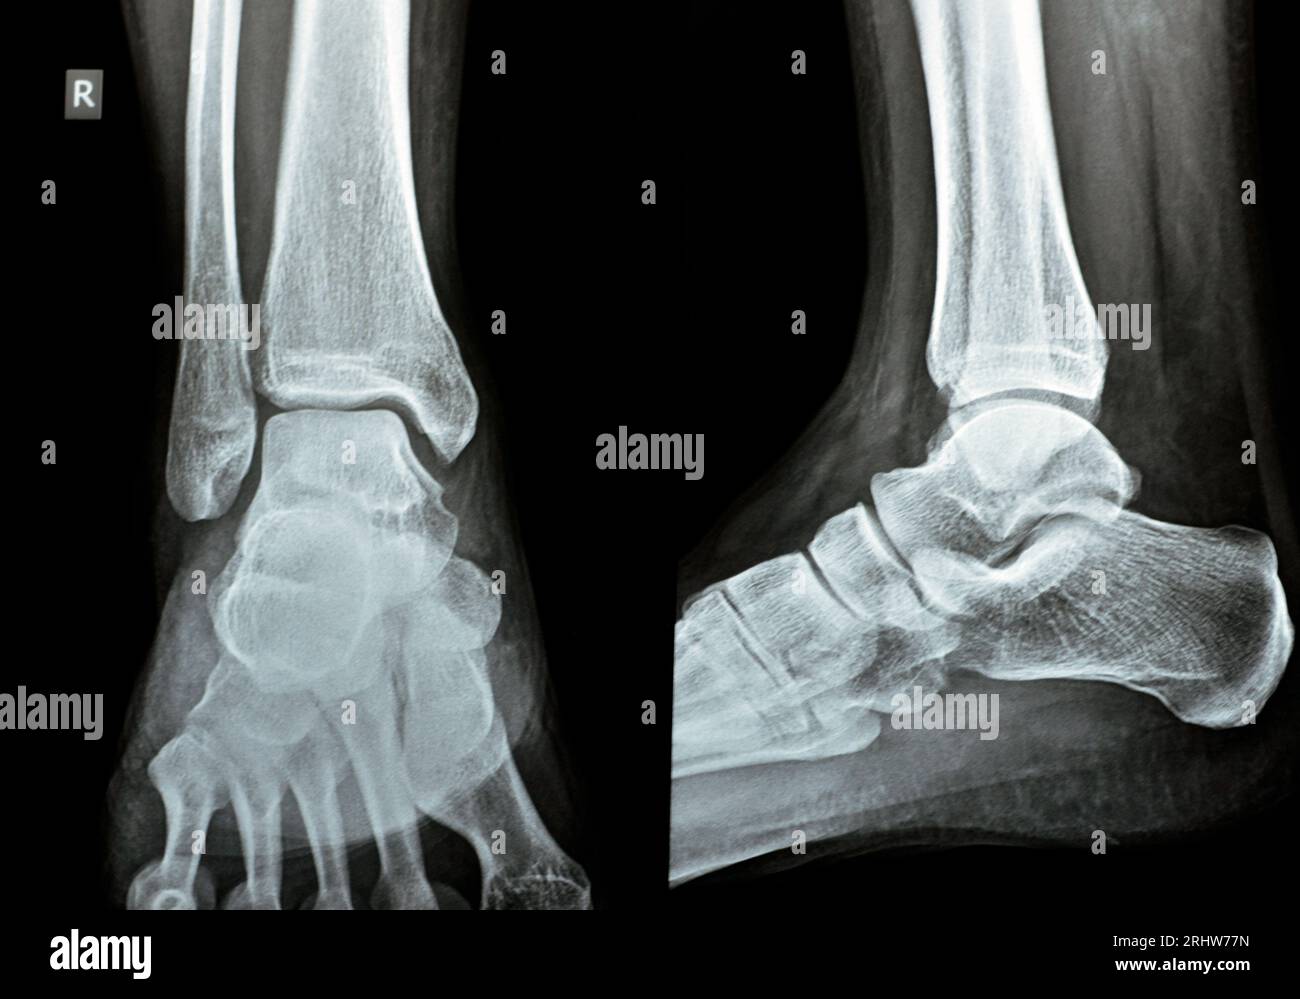 Radiographie directe AP vues latérales de la cheville droite montrant une entorse syndesmotique de la cheville, une blessure à un ou plusieurs ligaments comprenant le tibiofib distal Banque D'Images